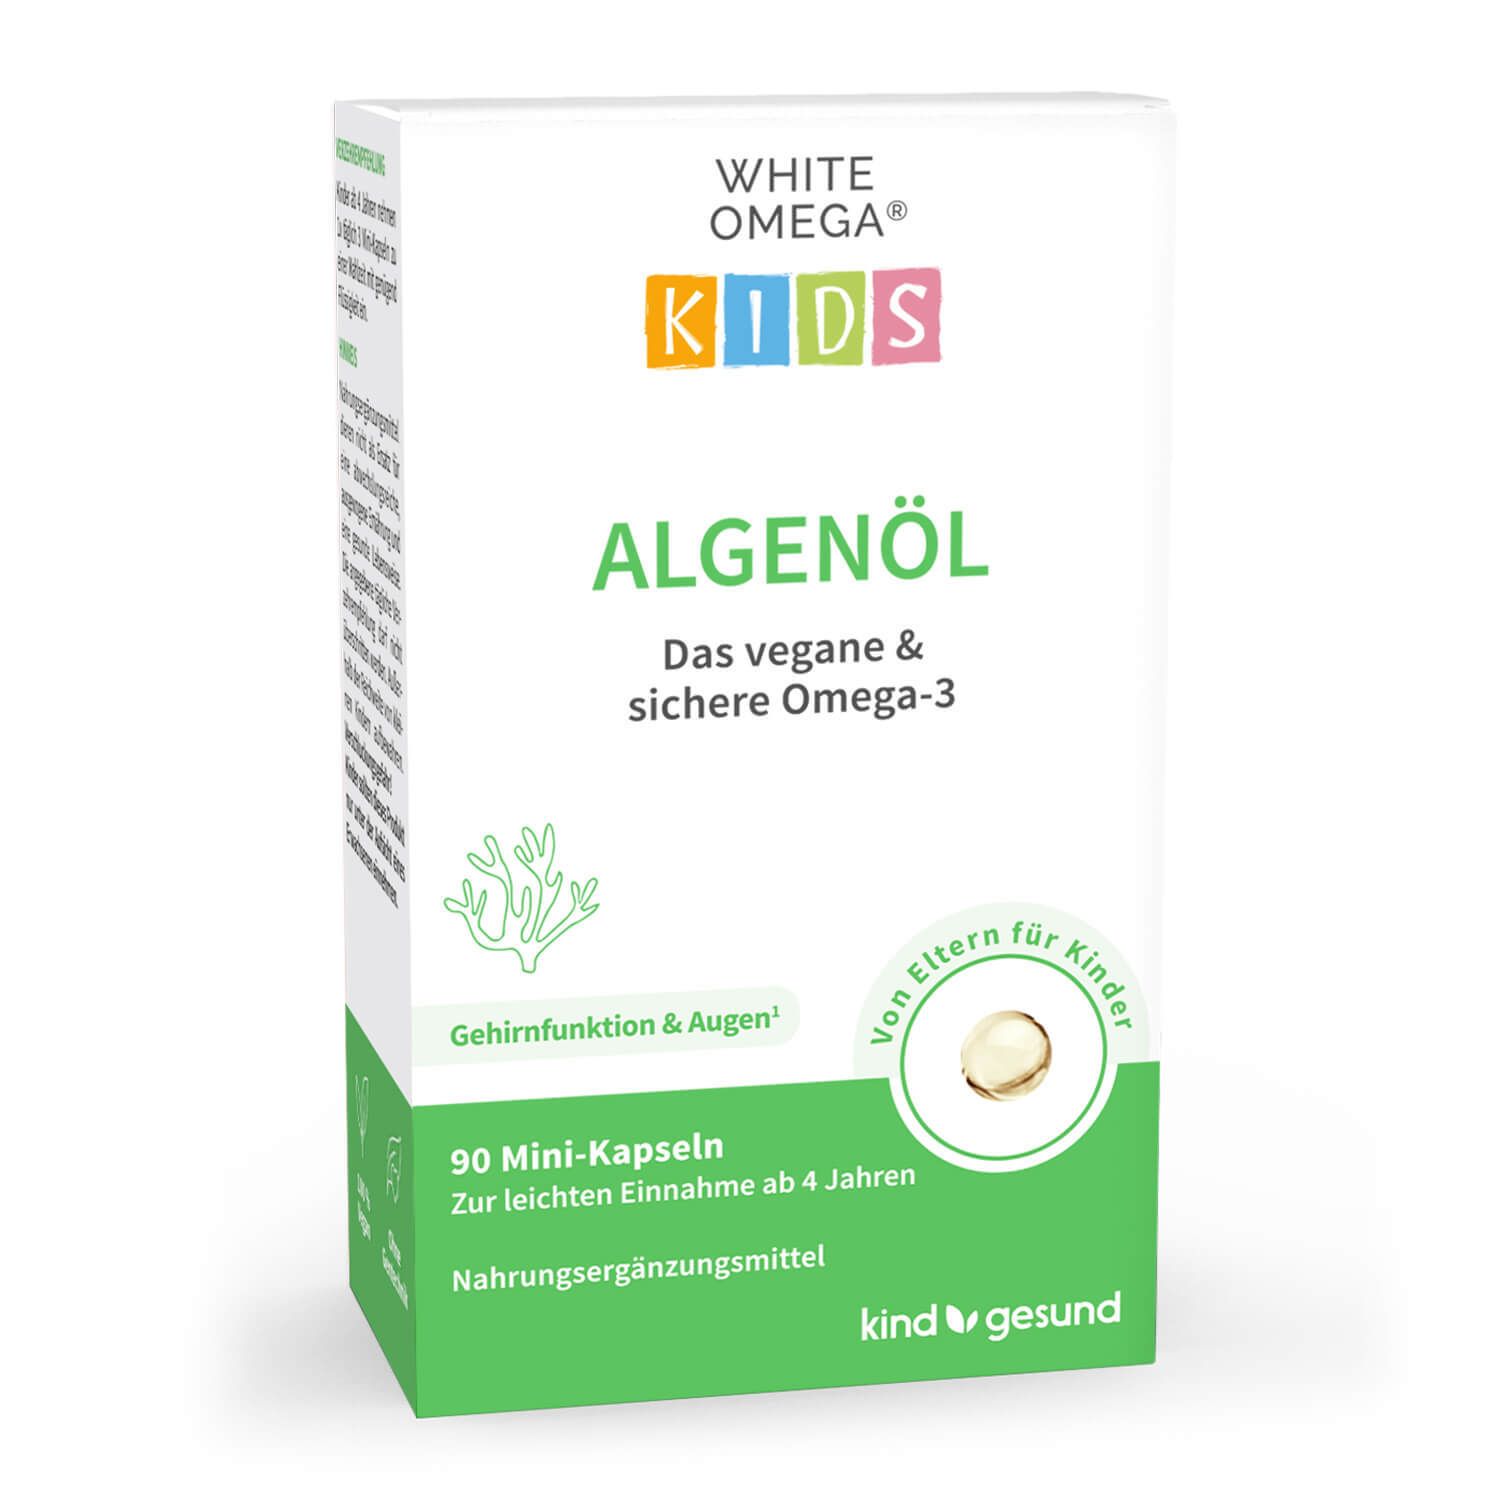 White Omega® Kids Algenöl